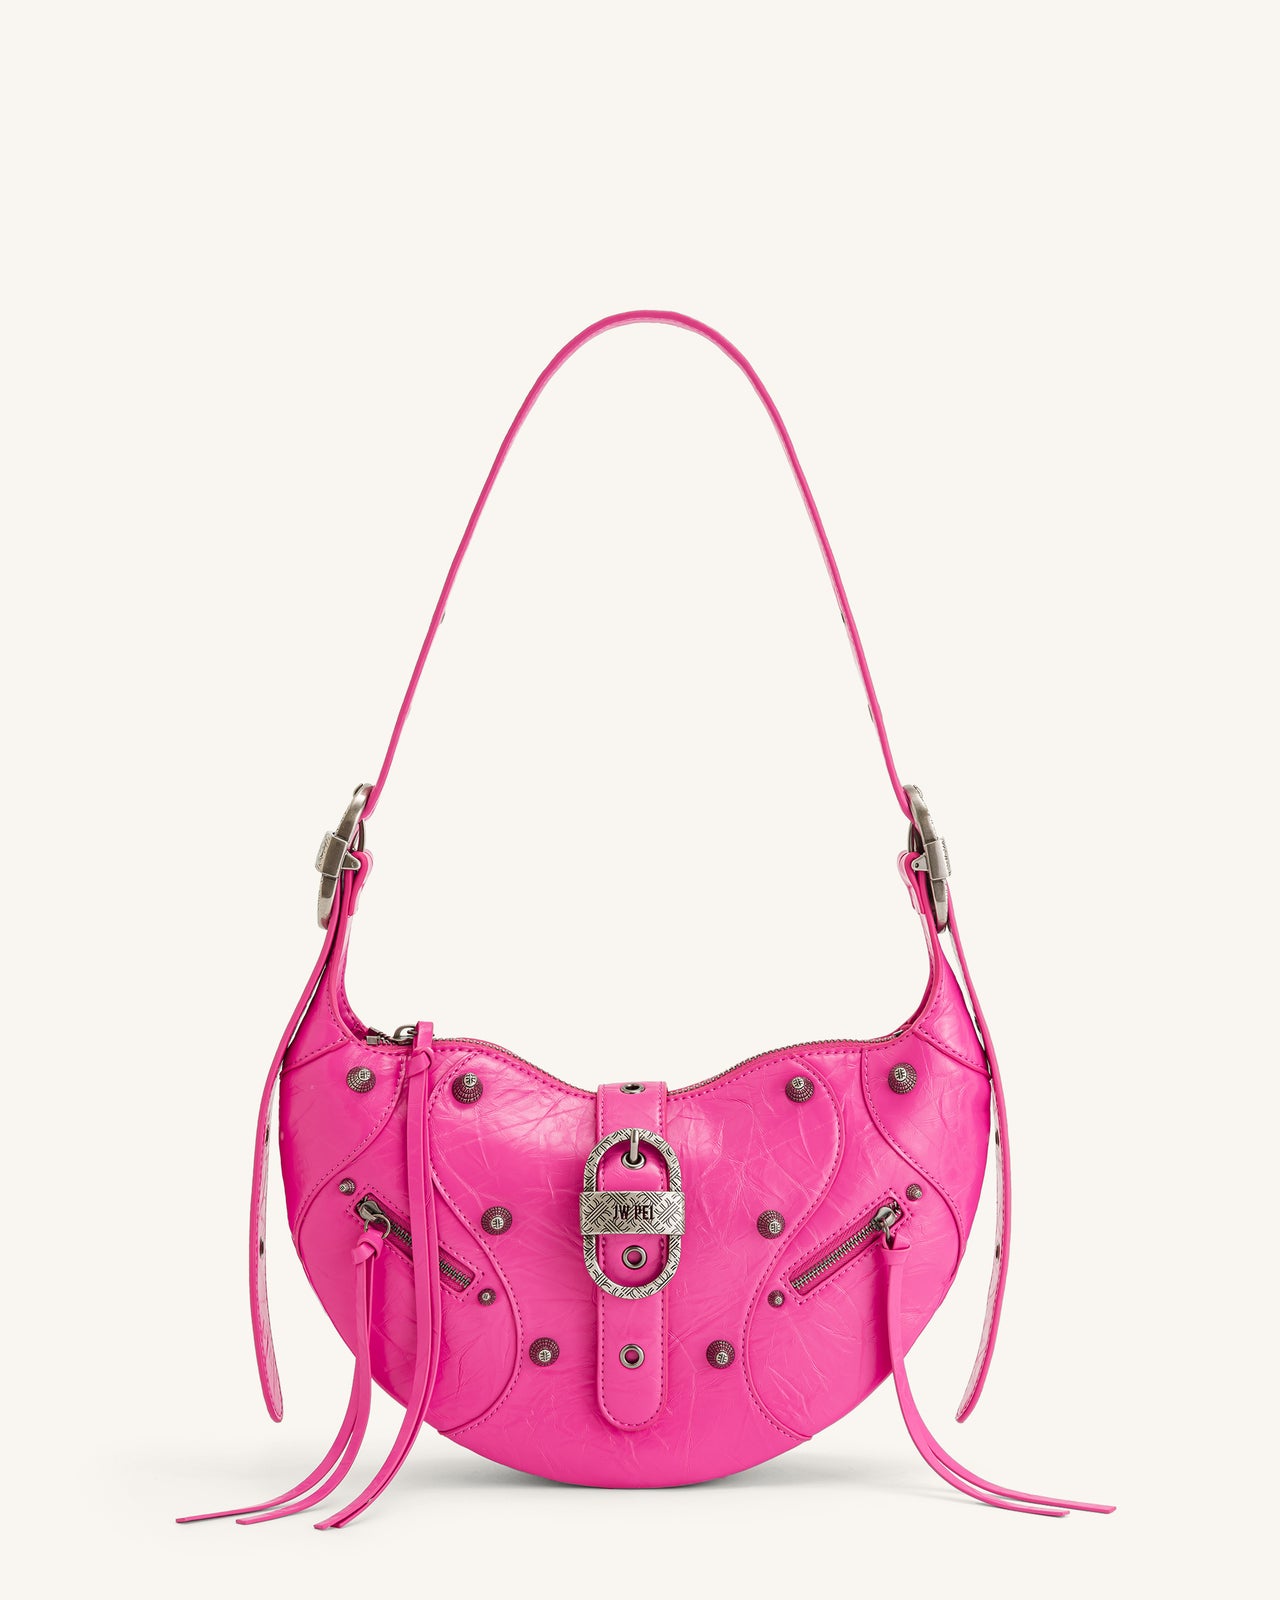 Tessa Crushed Shoulder Bag - Bright Pink